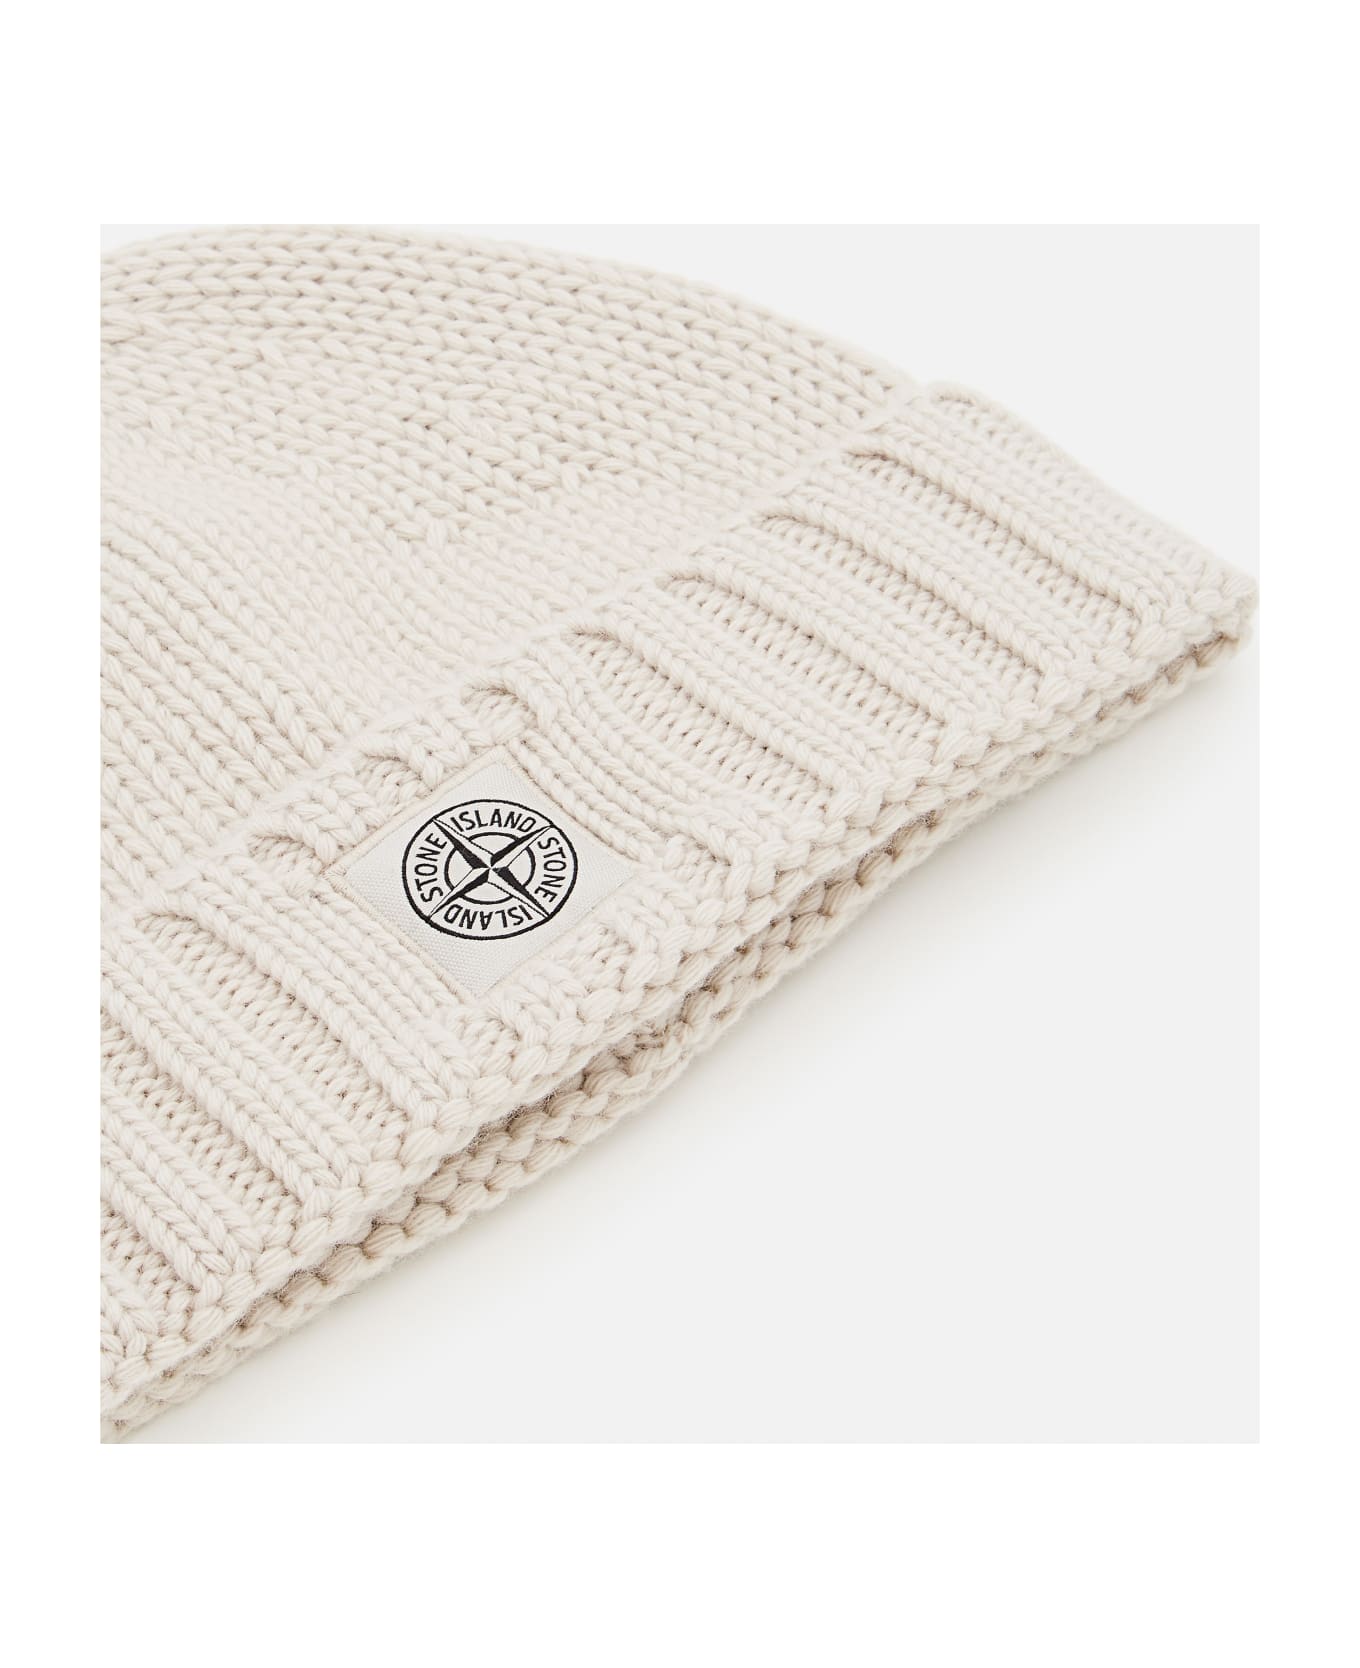 Stone Island Beige Plain Knit Beanie With Logo Patch - Marrone 帽子